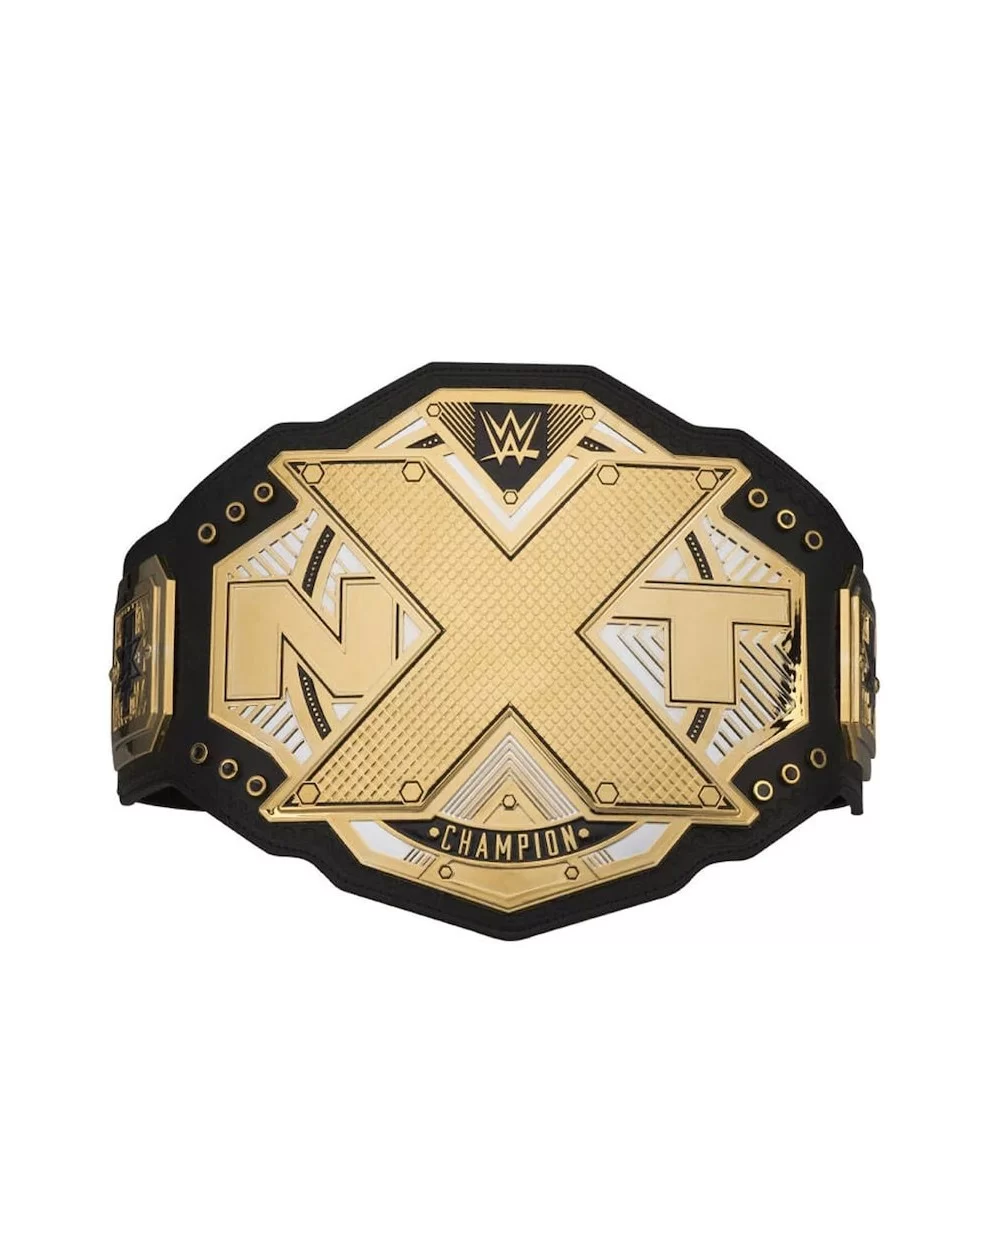 NXT Championship Commemorative Title Belt $51.80 Title Belts